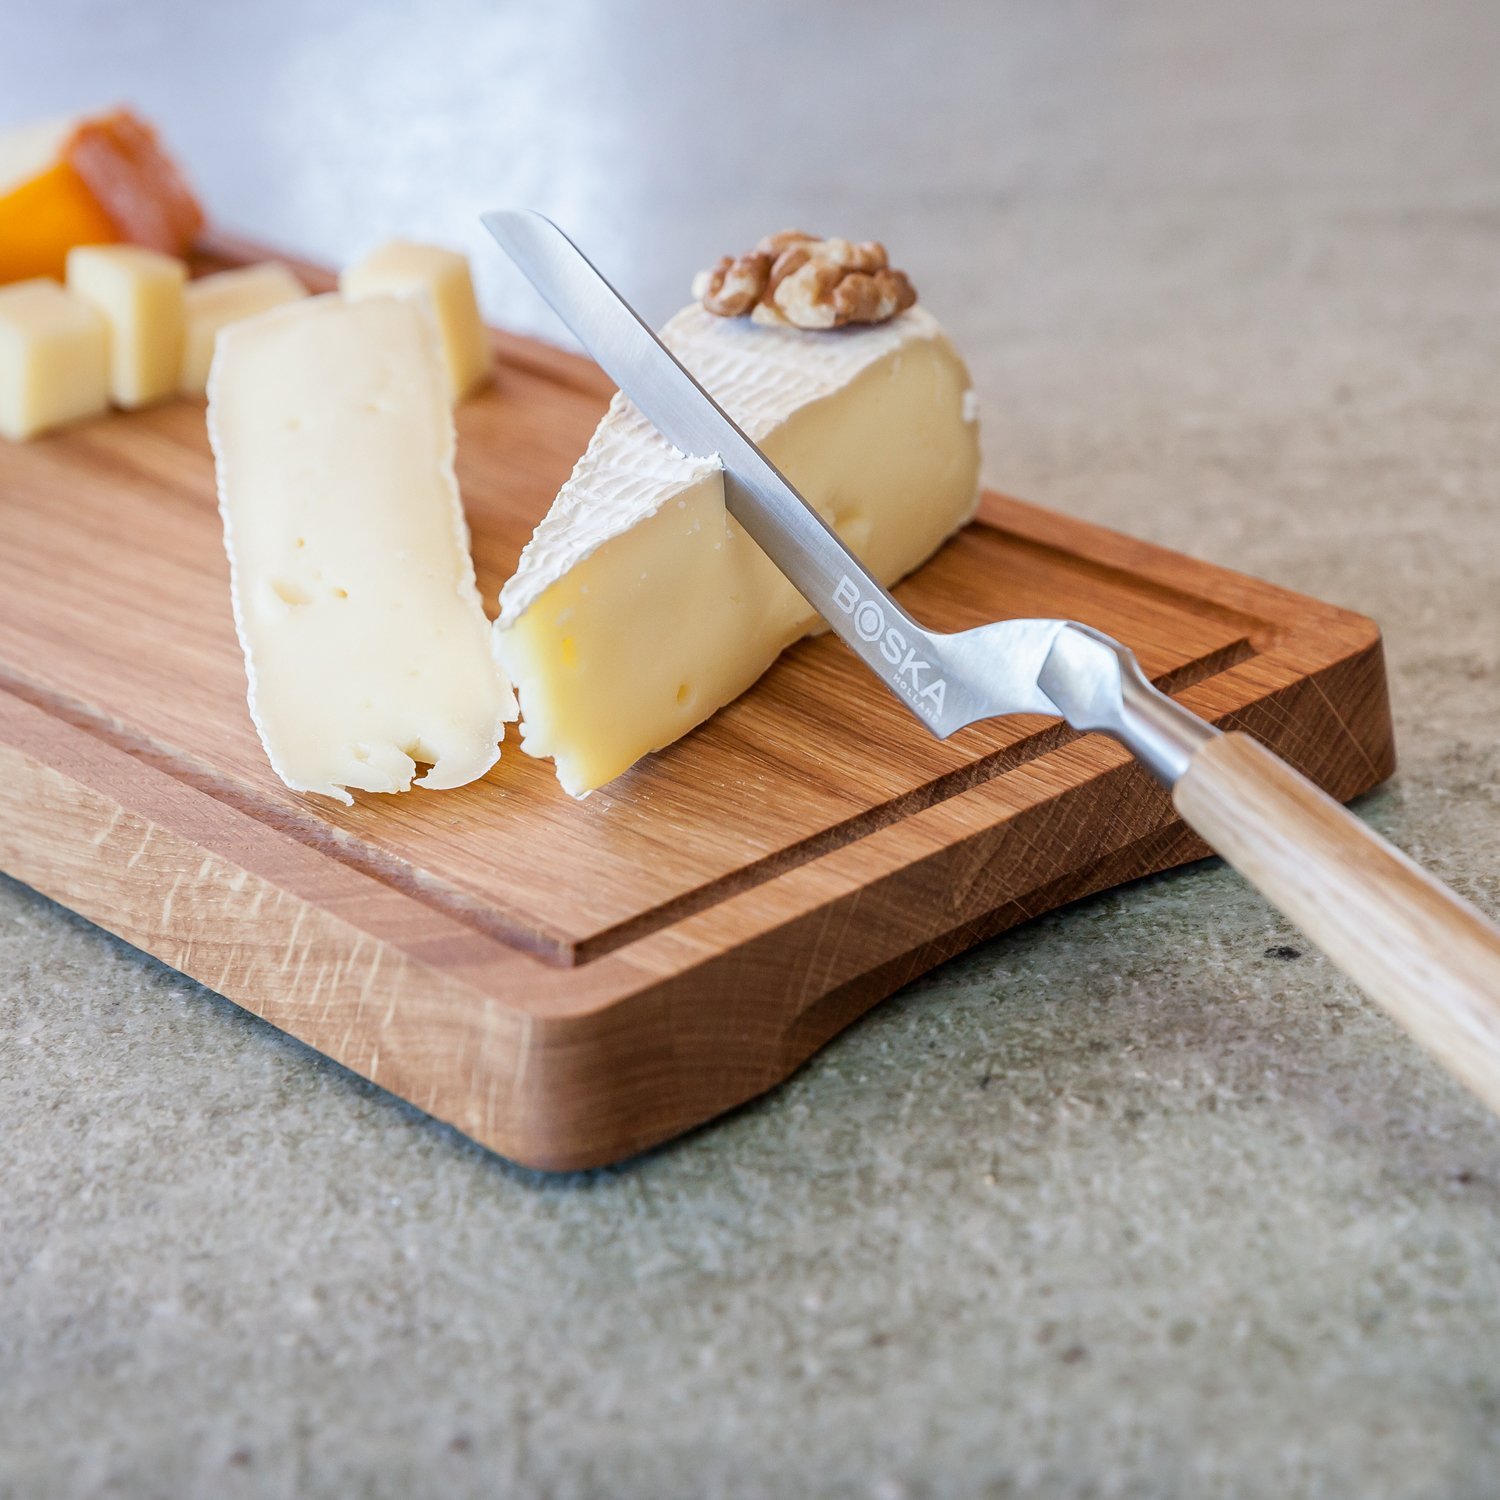 Girolle - Friseur à fromage - Tête de Moine - bois de chêne - Life - Boska